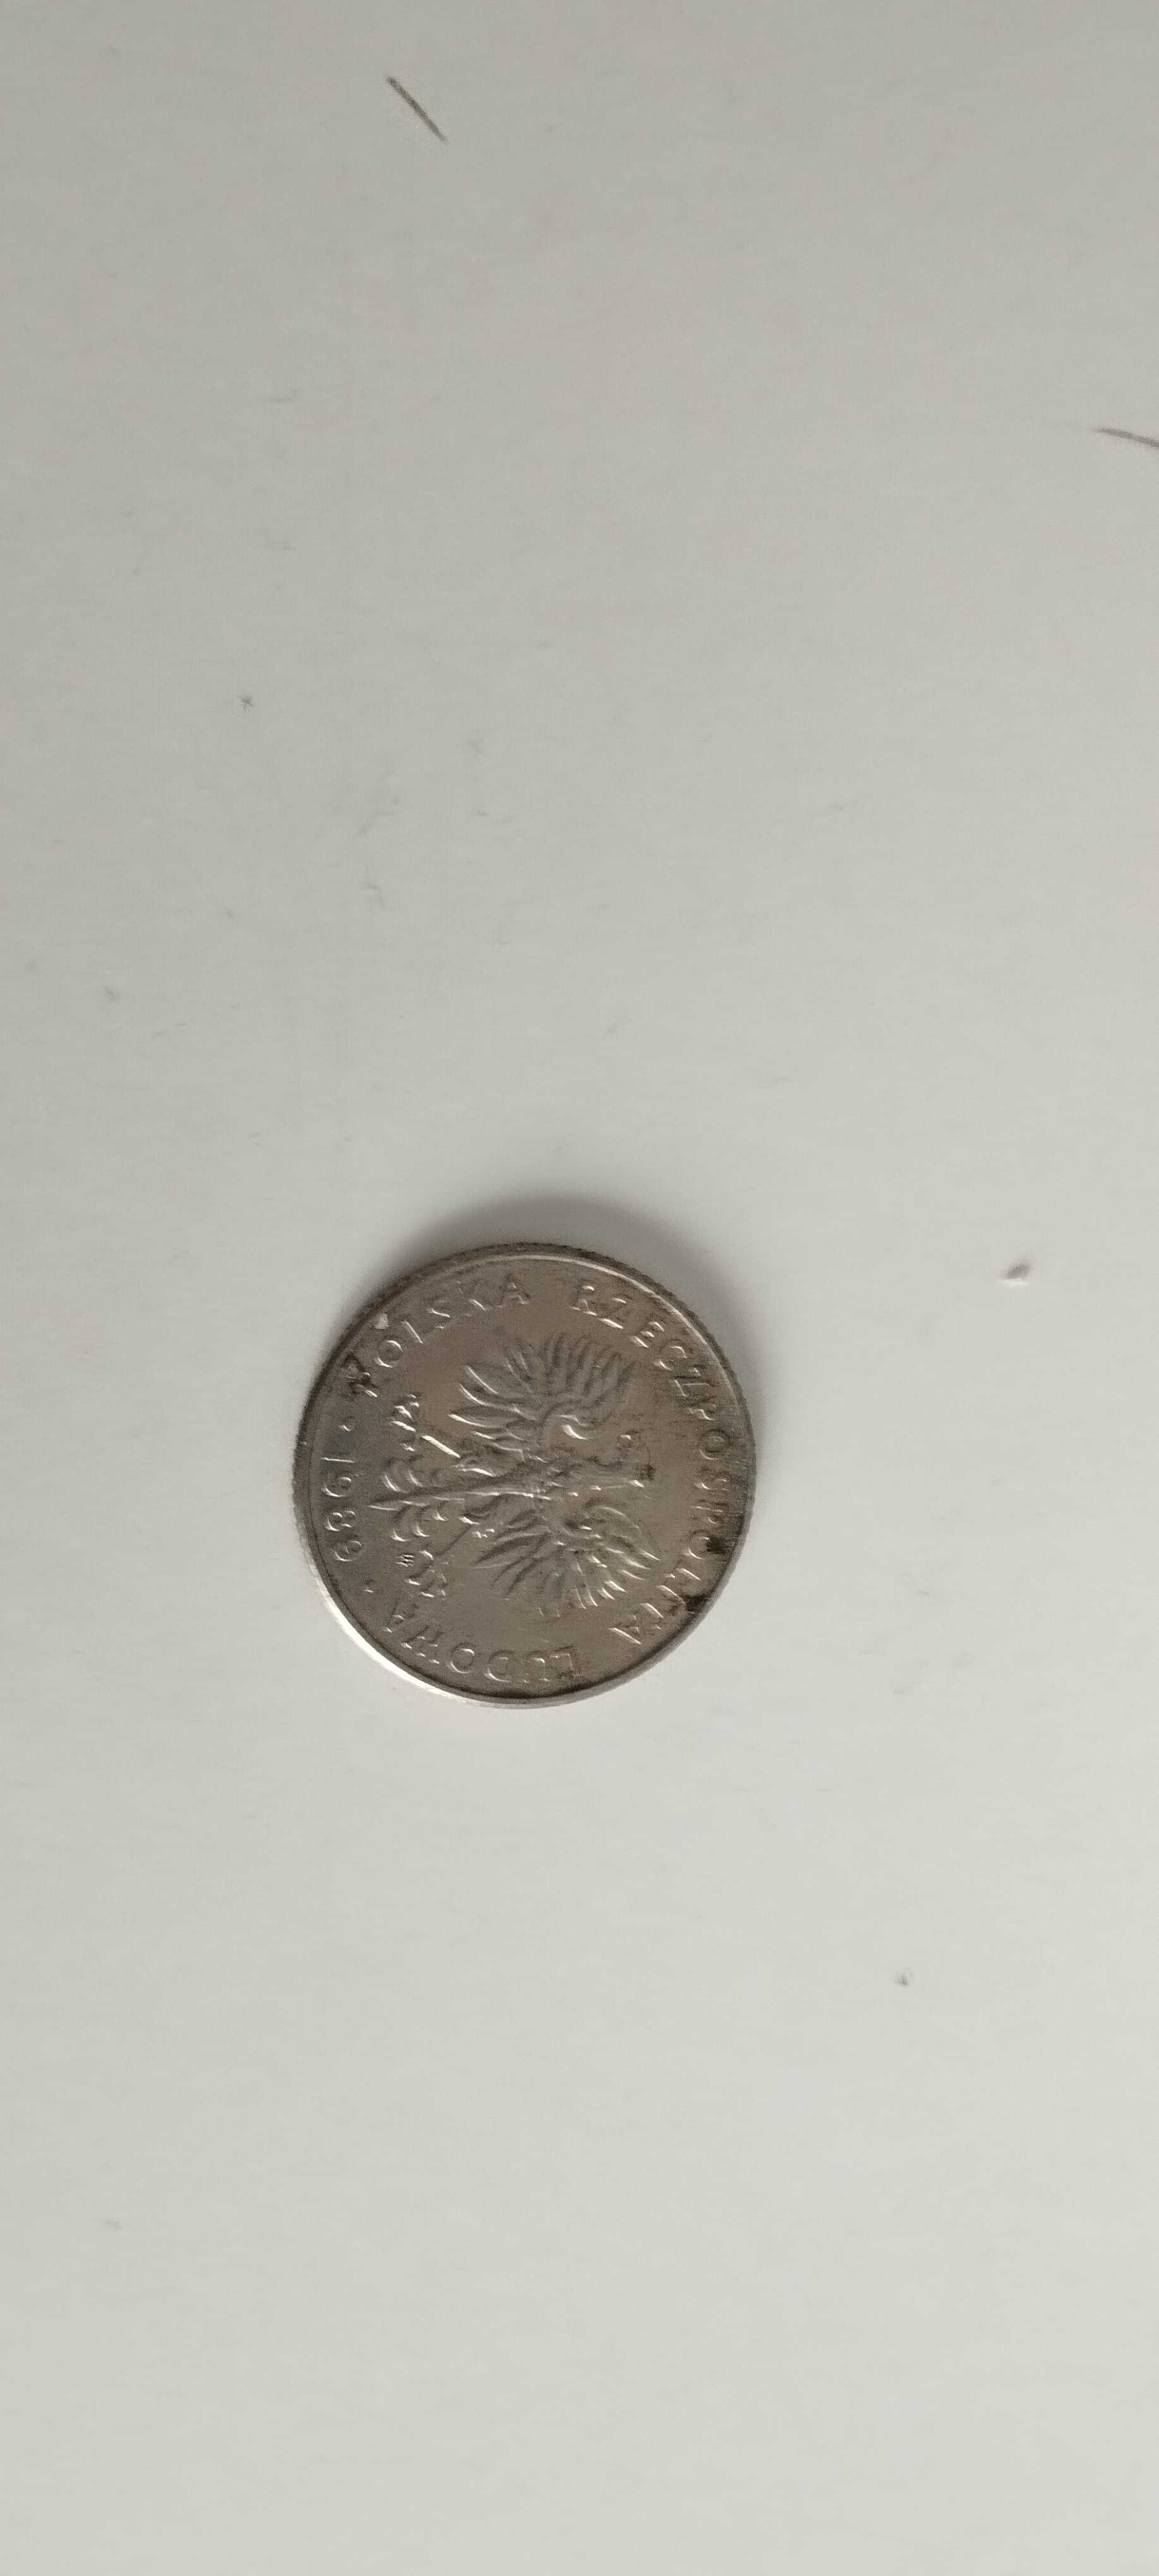 2 monety 20 zł 1989 r.